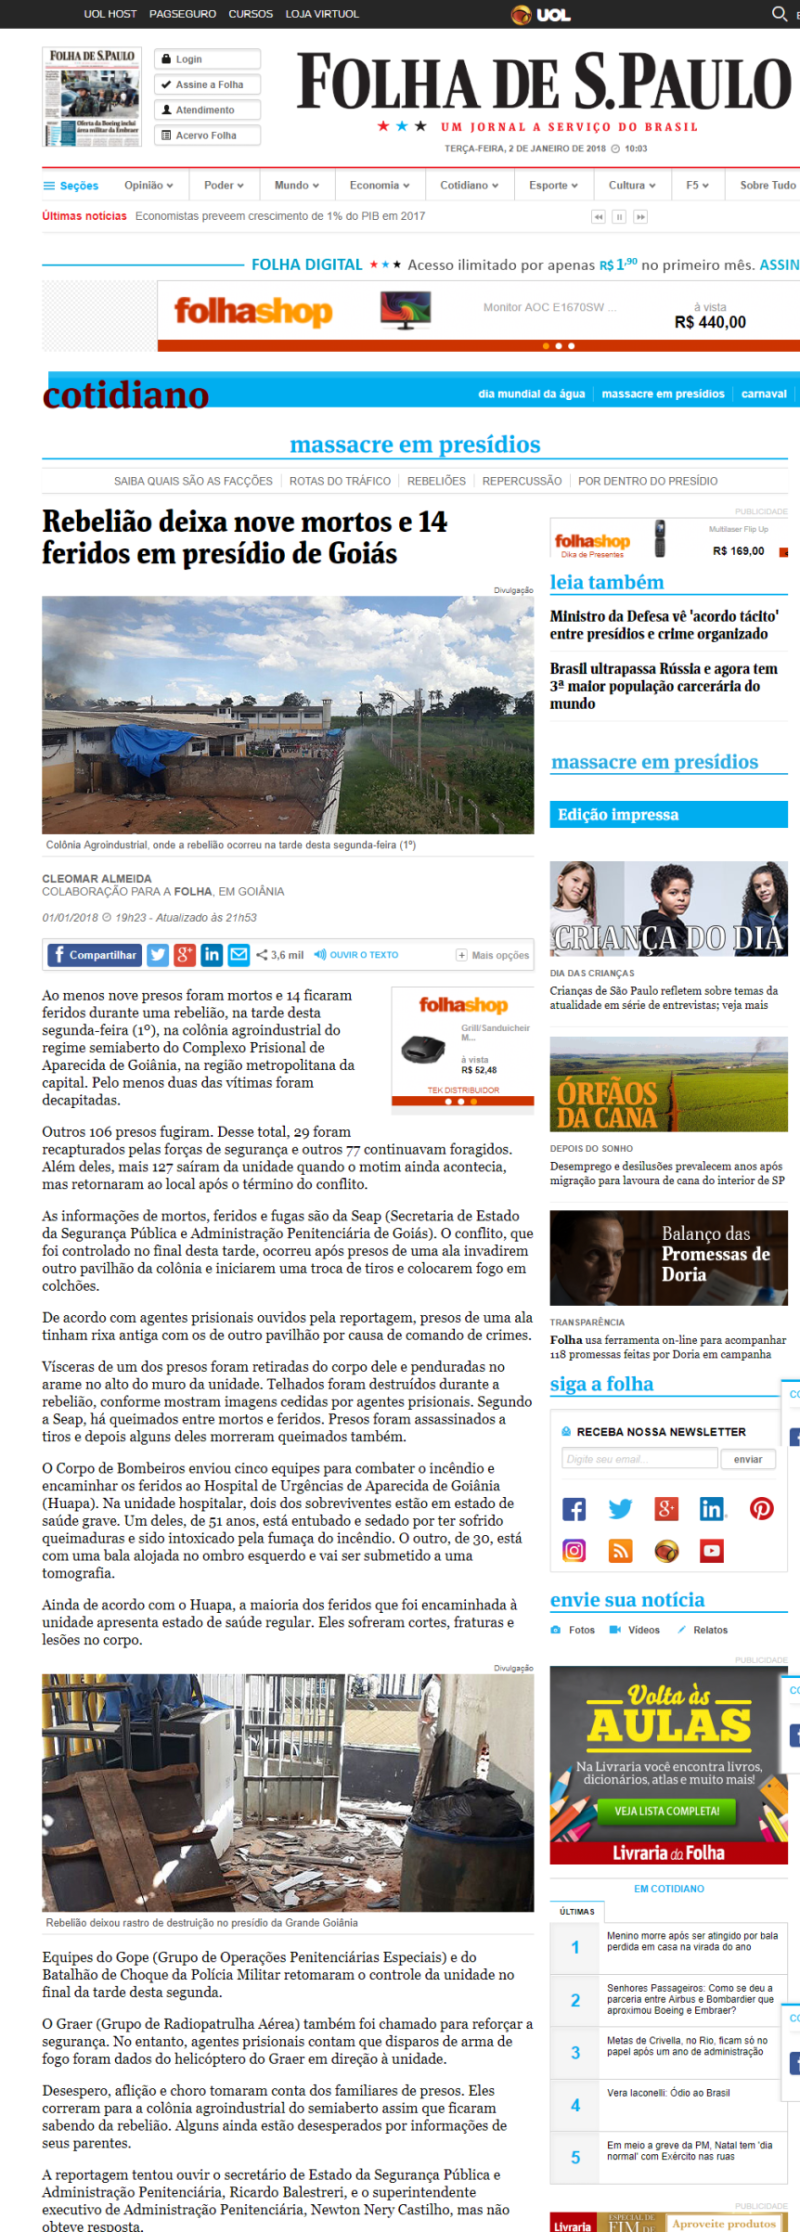 Imprensa nacional e internacional repercute massacre no Complexo Prisional em Goiás